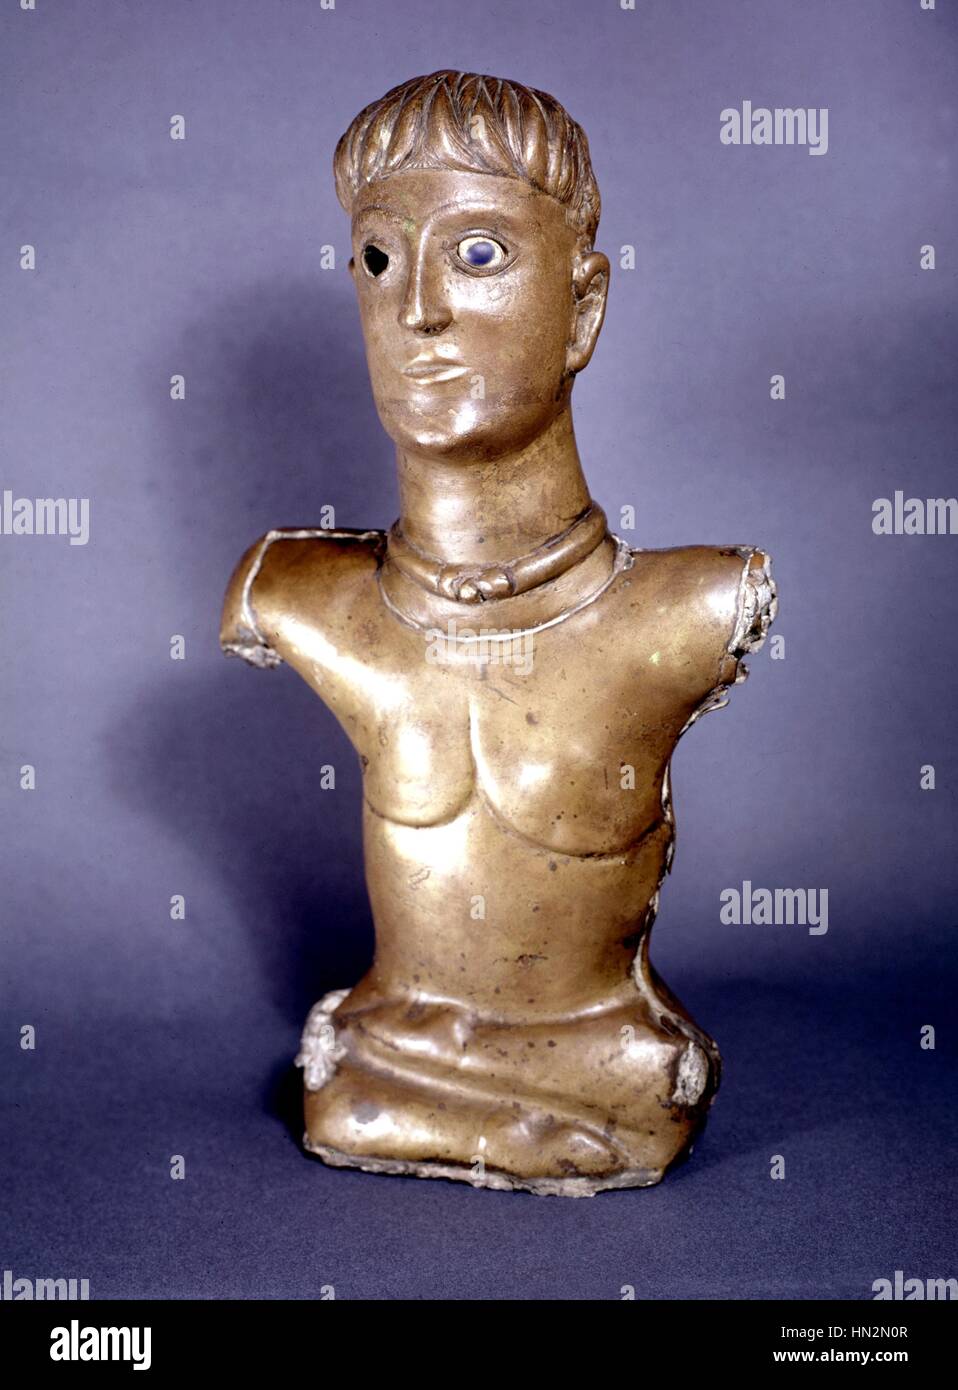 Arte galo, Dios de Bouray, encontrado cerca de La Ferte Alais Siglo III A.C. de Saint-Germain, el Musee des Antiquites Nationales Foto de stock